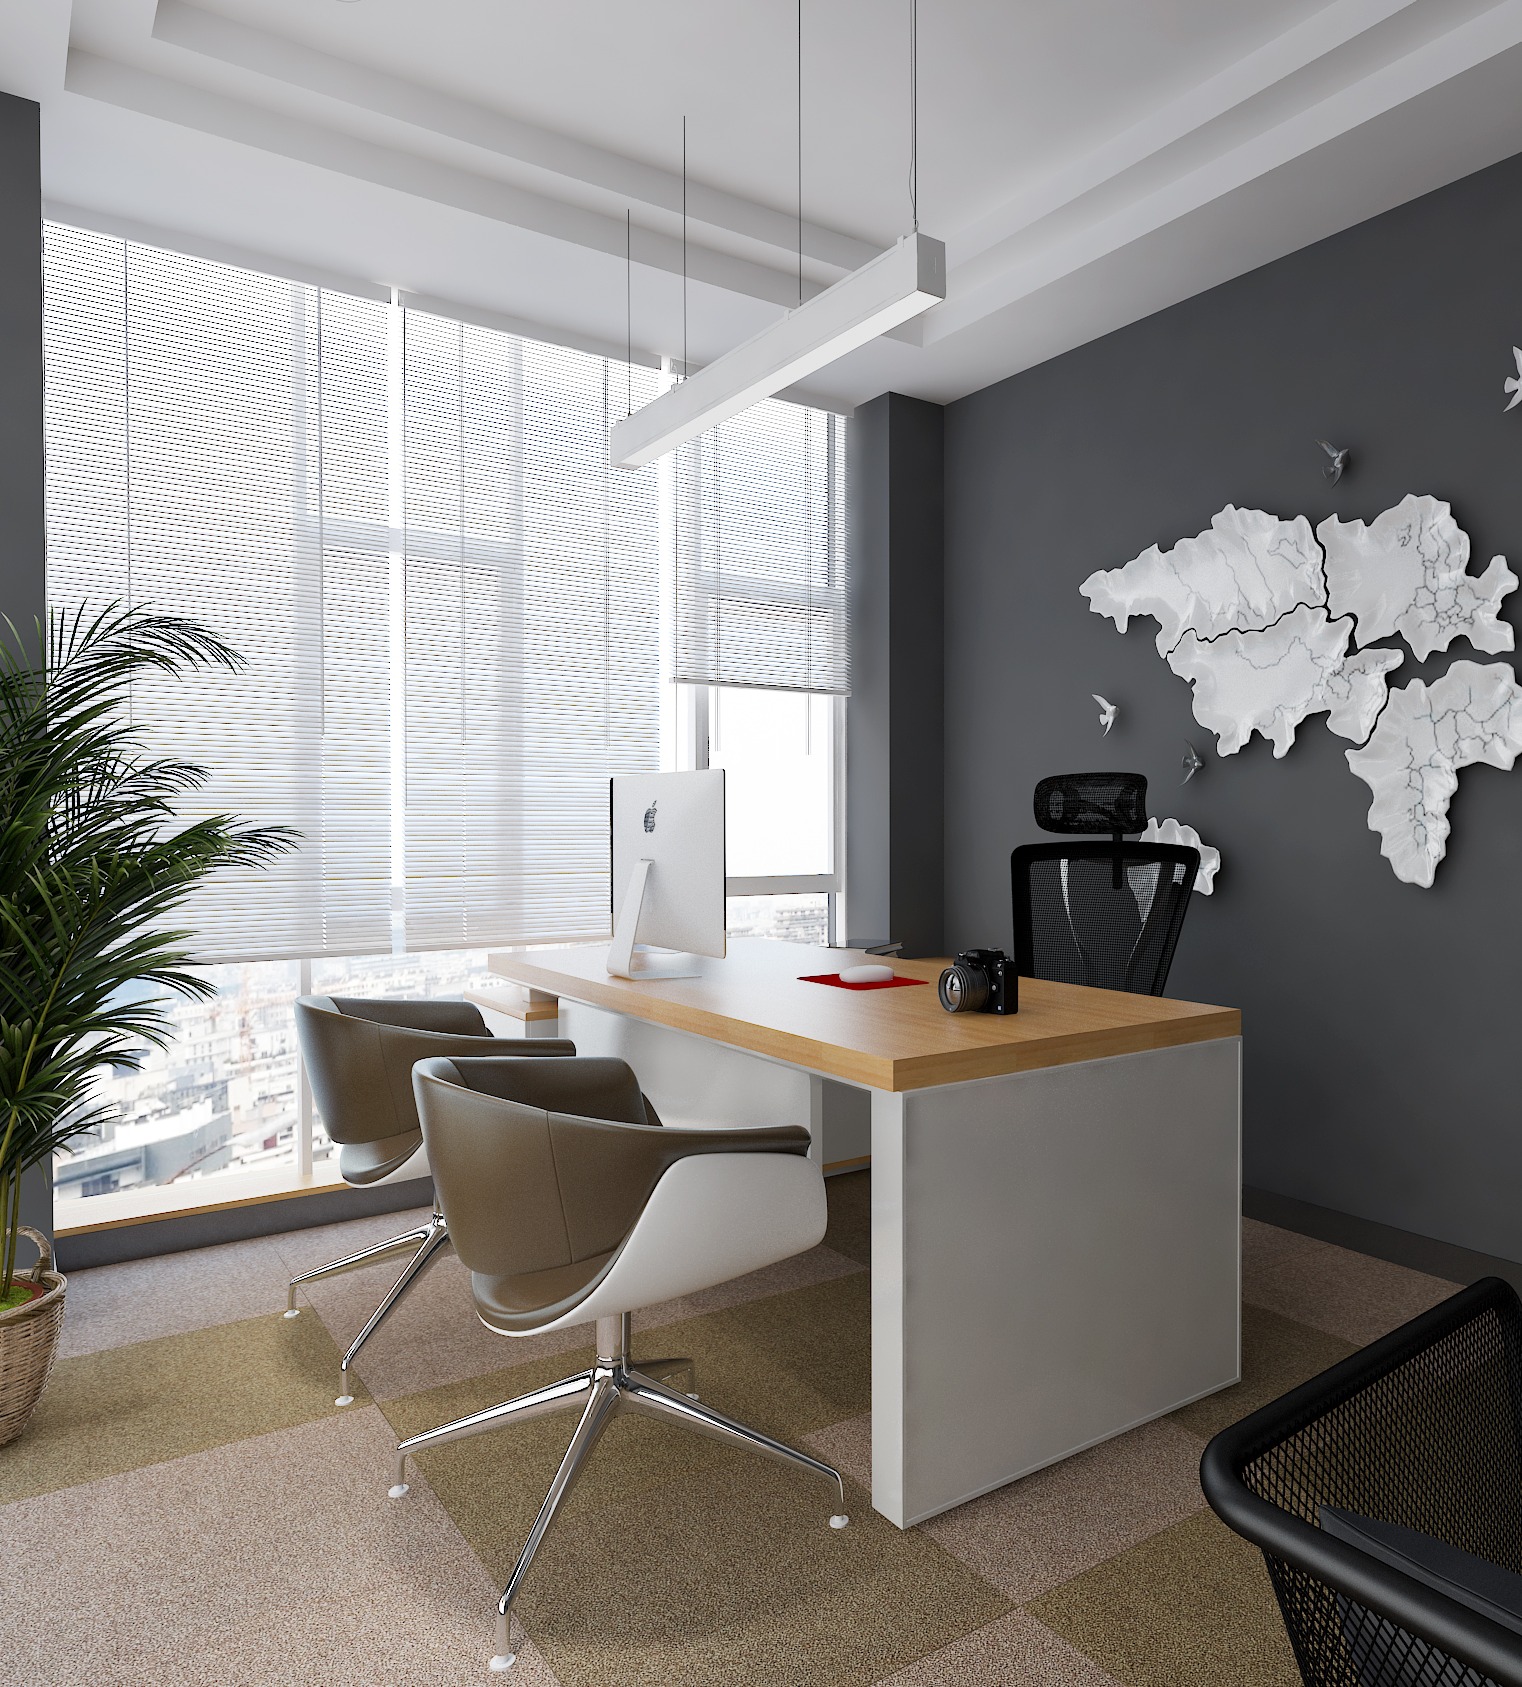 『公司办公室』高端室内设计装修设计效果图施工图软装配饰设计